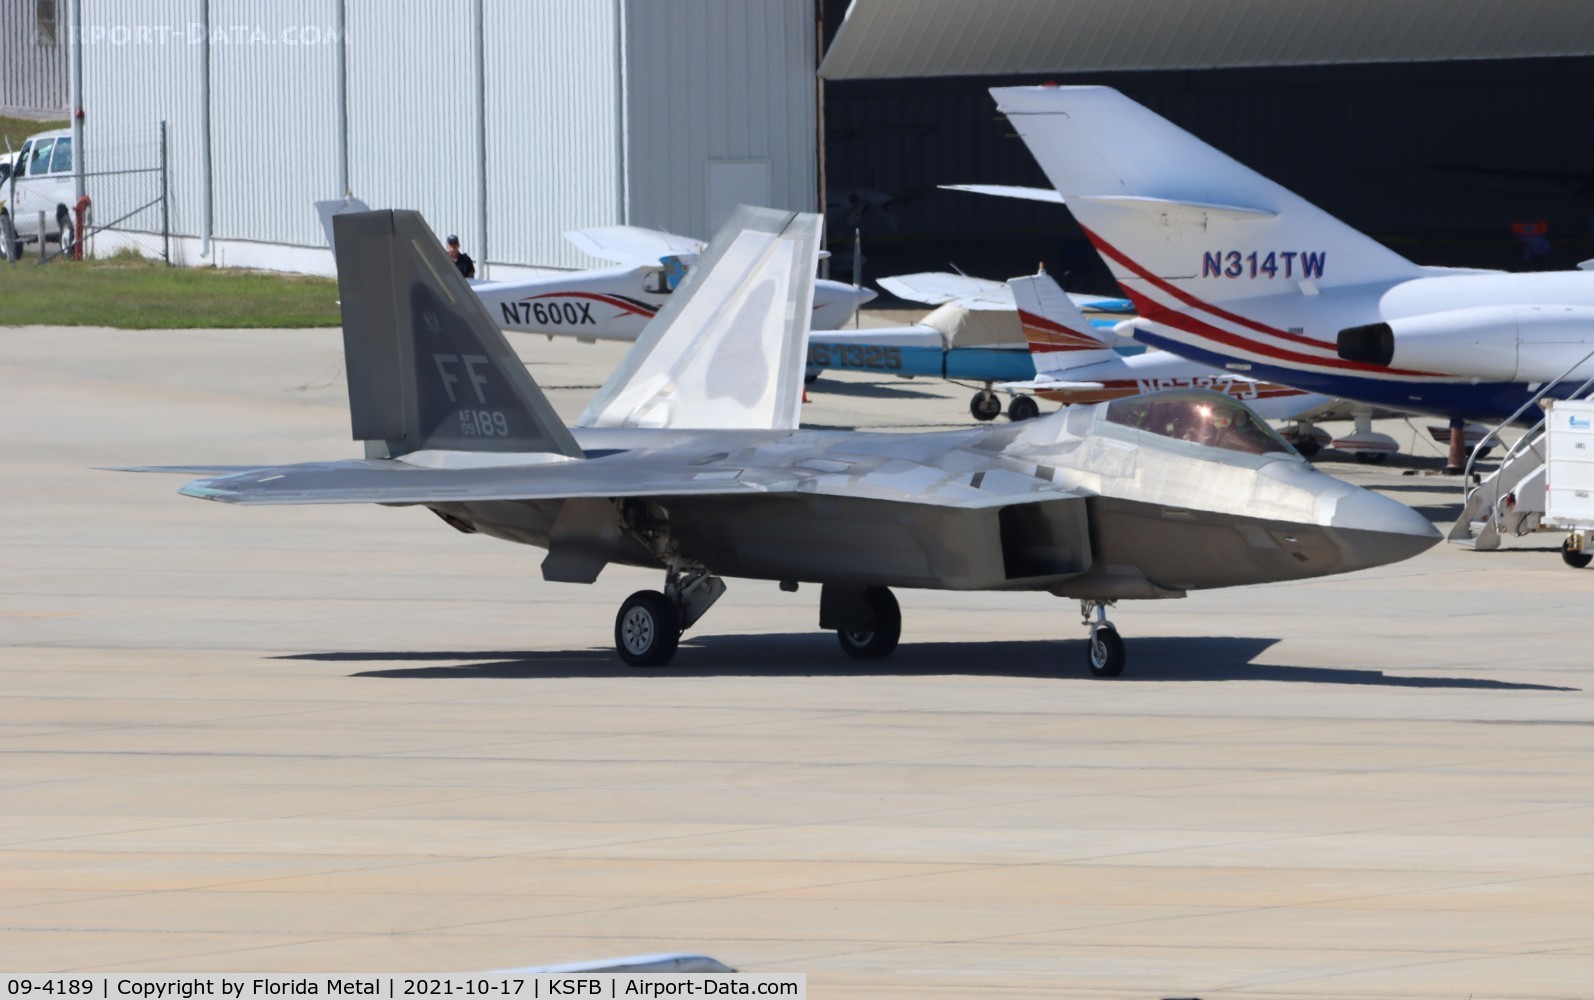 09-4189, 2009 Lockheed Martin F-22A Raptor C/N 645-4189, F-22A zx